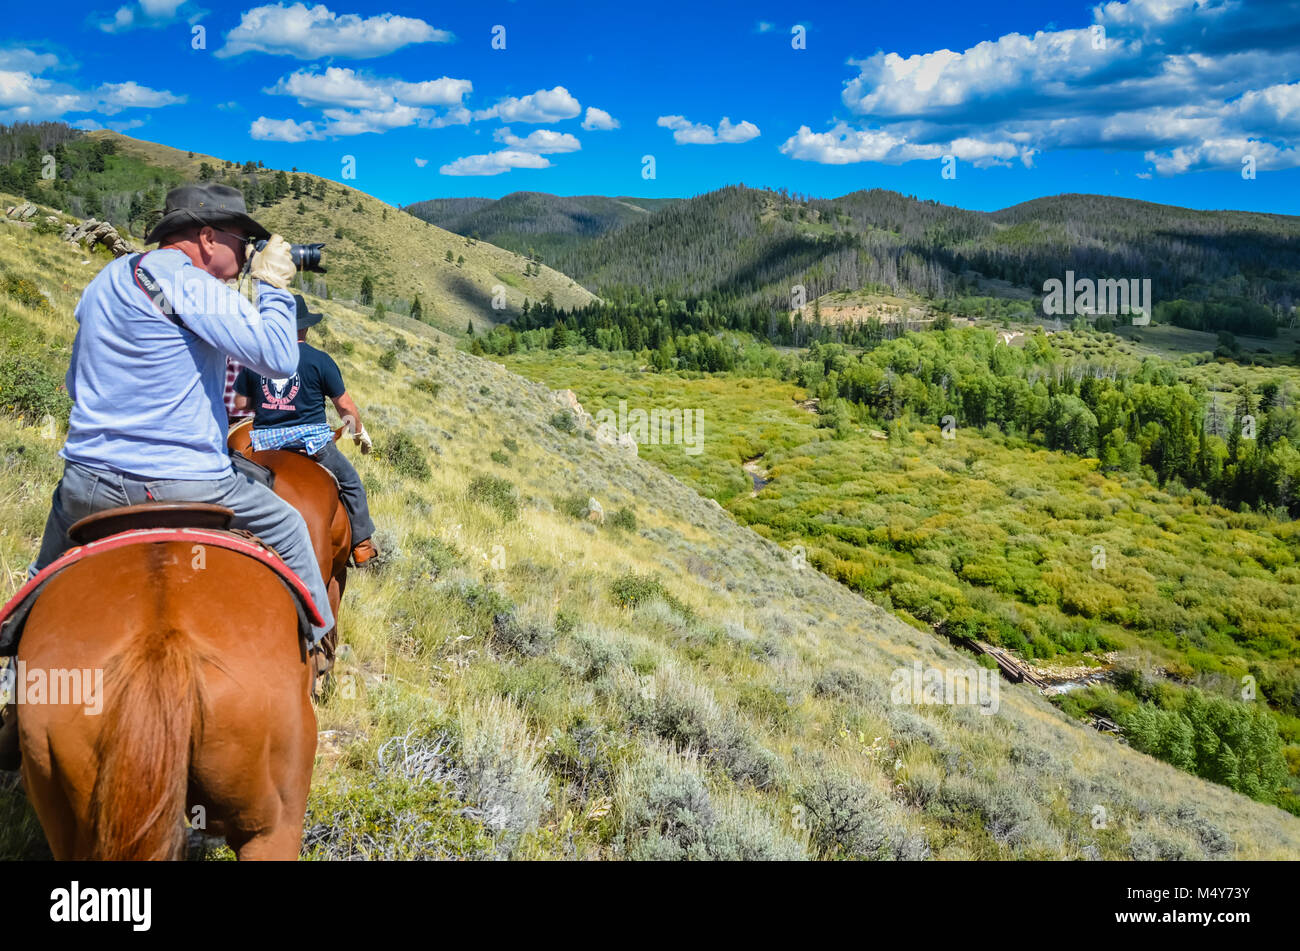 Un homme porte un appareil photo, tout en chevauchant un cheval, sur un sentier de montagne dans la région de Medicine Bow National Forest. Banque D'Images